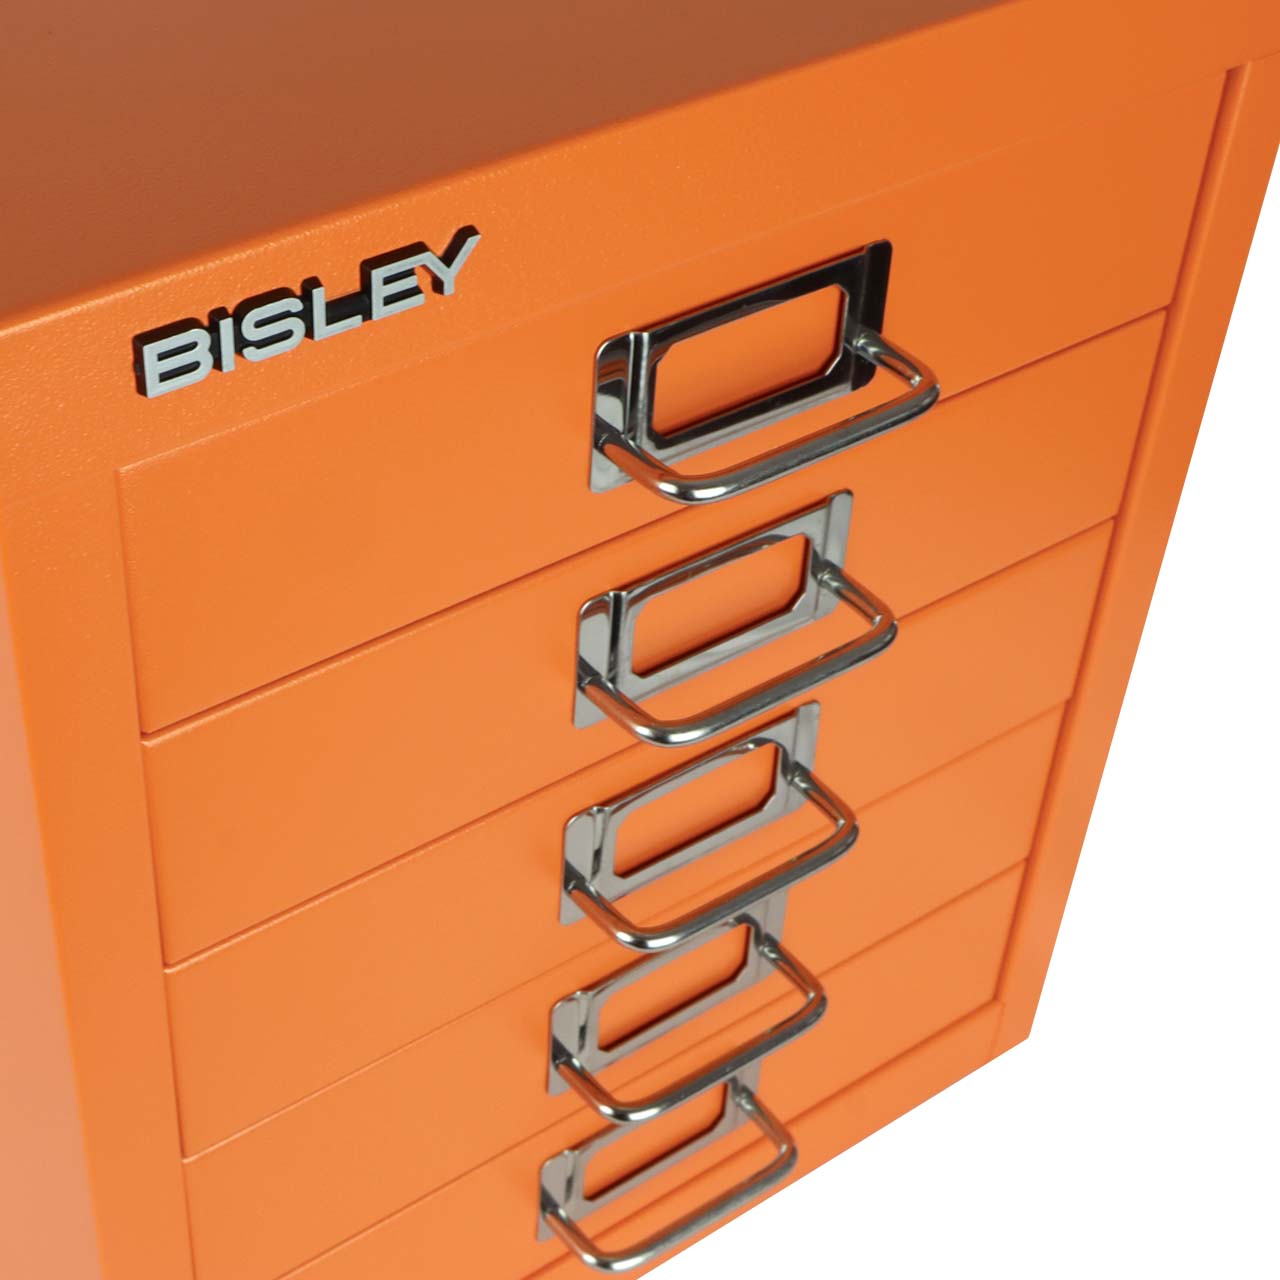 Bisley 5-Drawer Desktop MultiDrawer Steel Cabinet